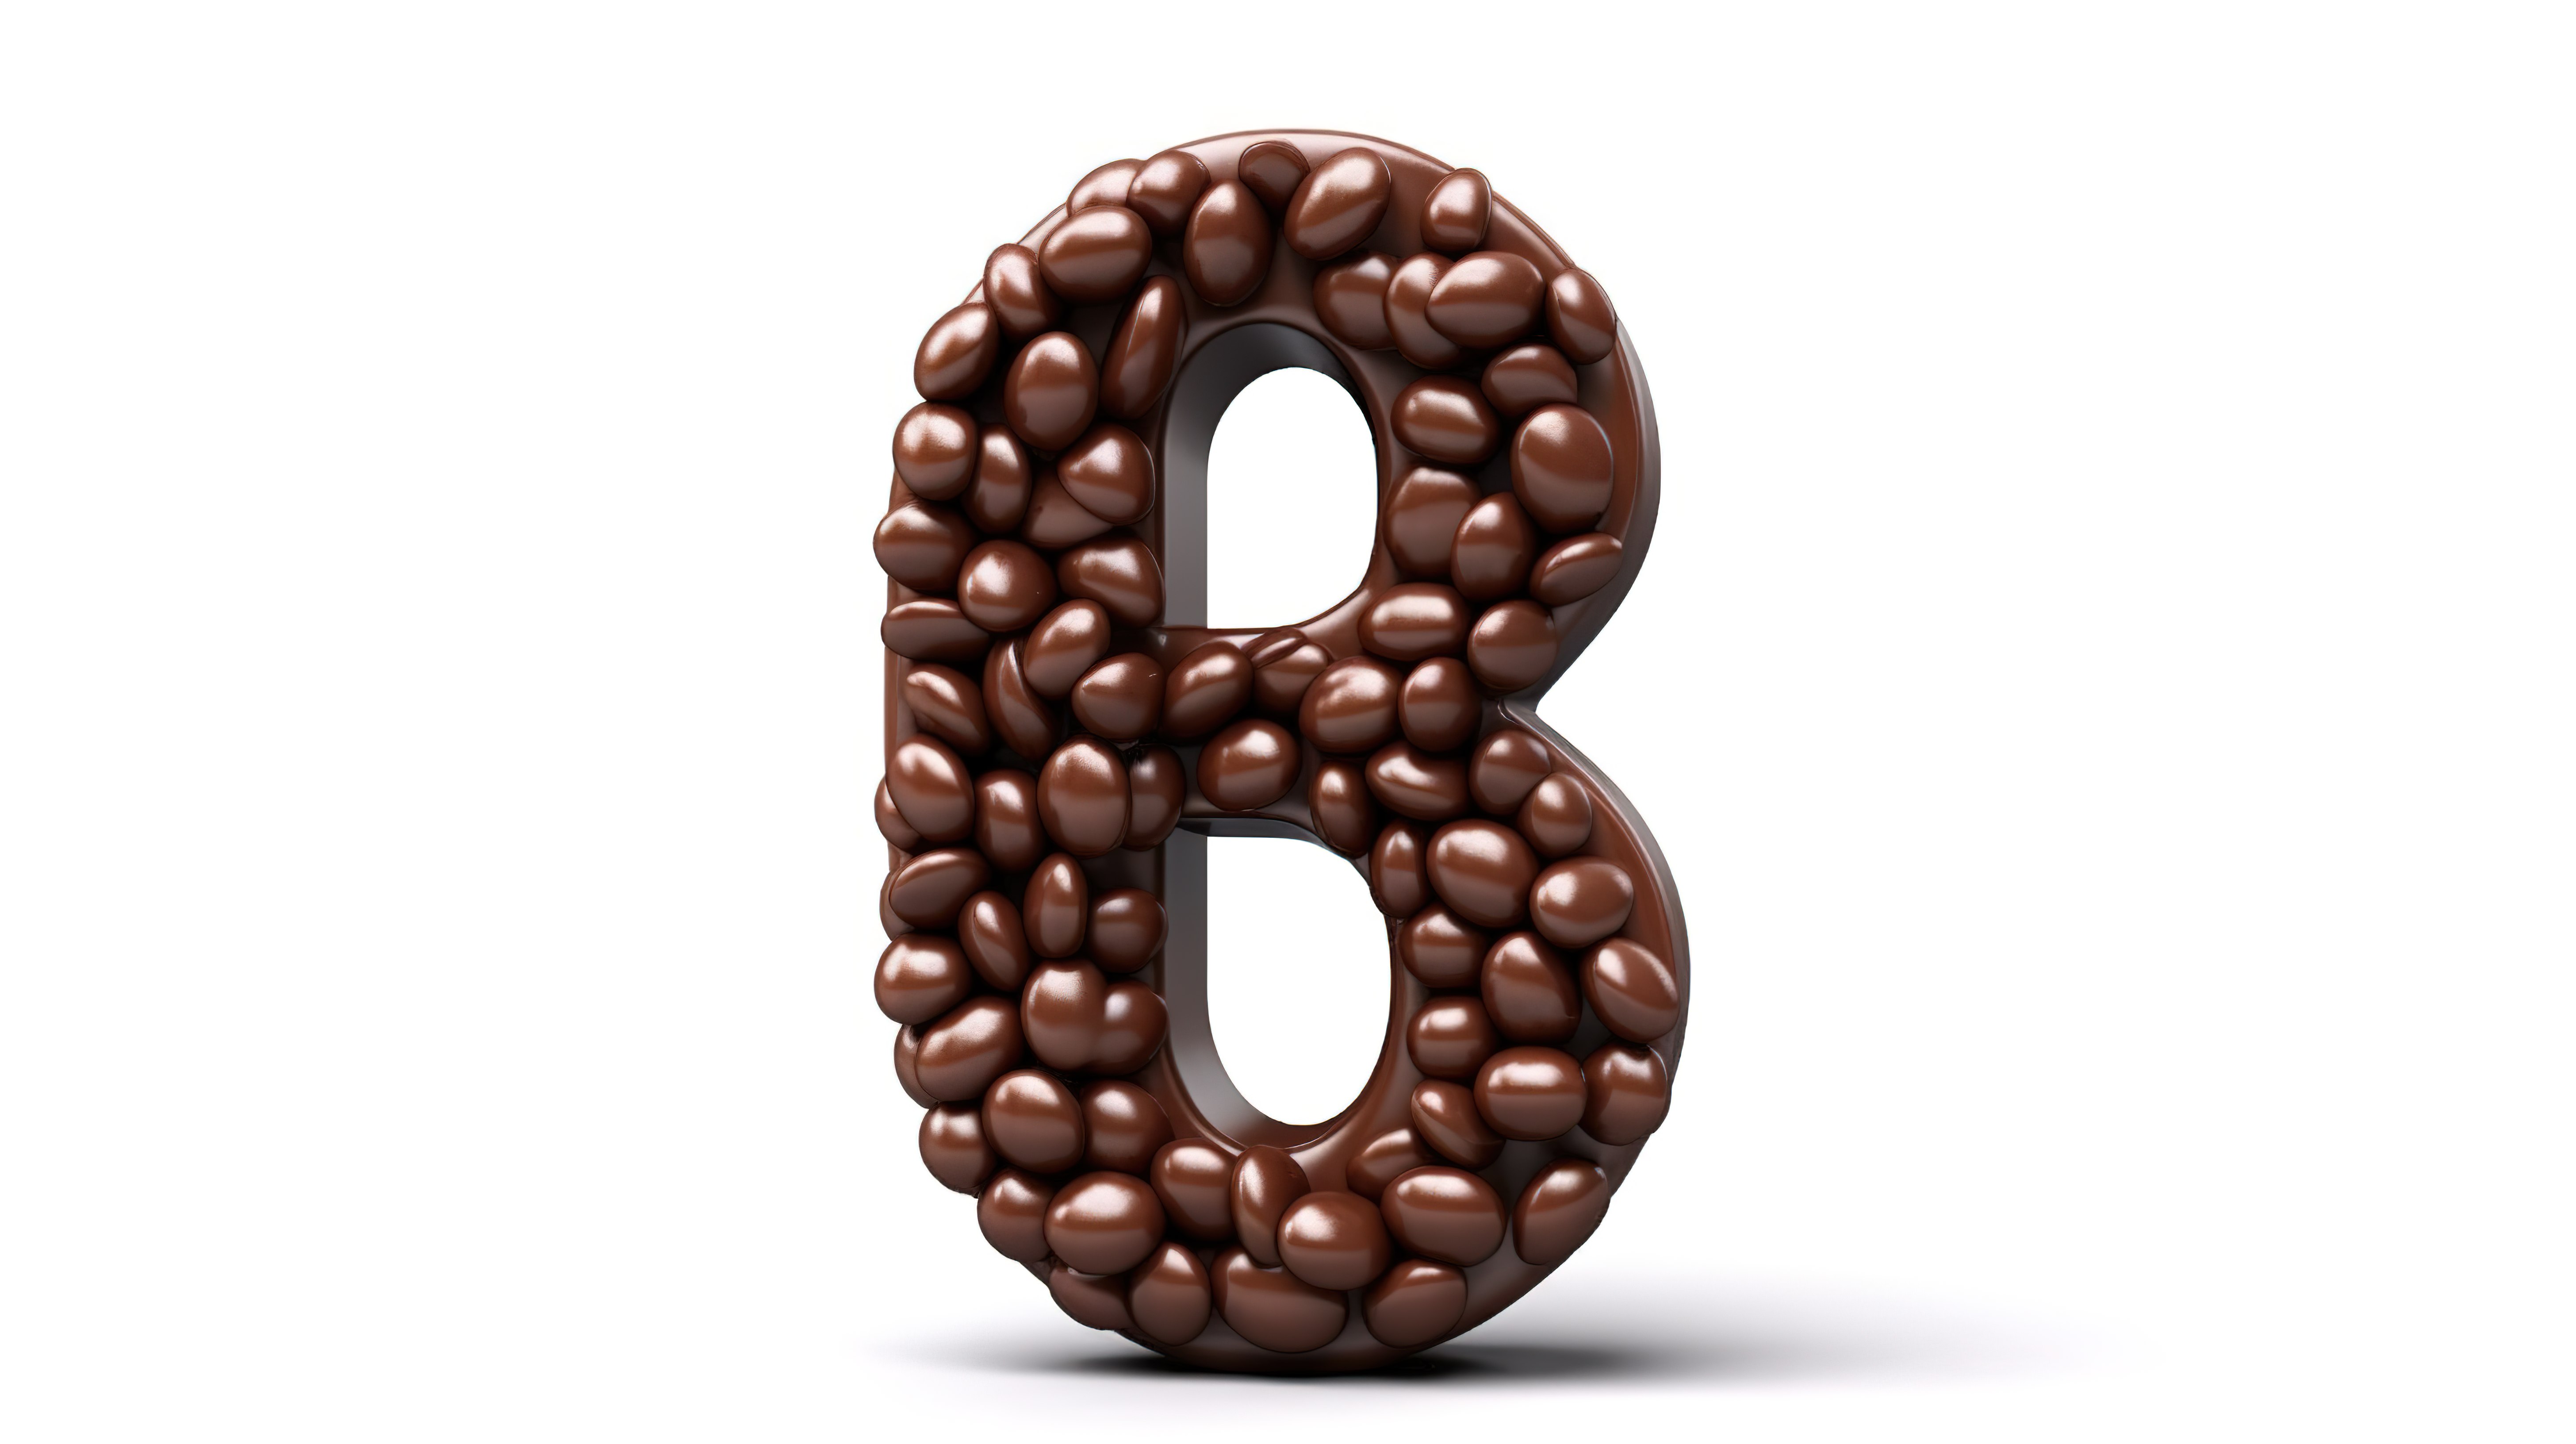 数字 8 的 3D 插图，由巧克力镶嵌糖果涂层豆和巧克力糖果制成，形成字母中的“八”字图片